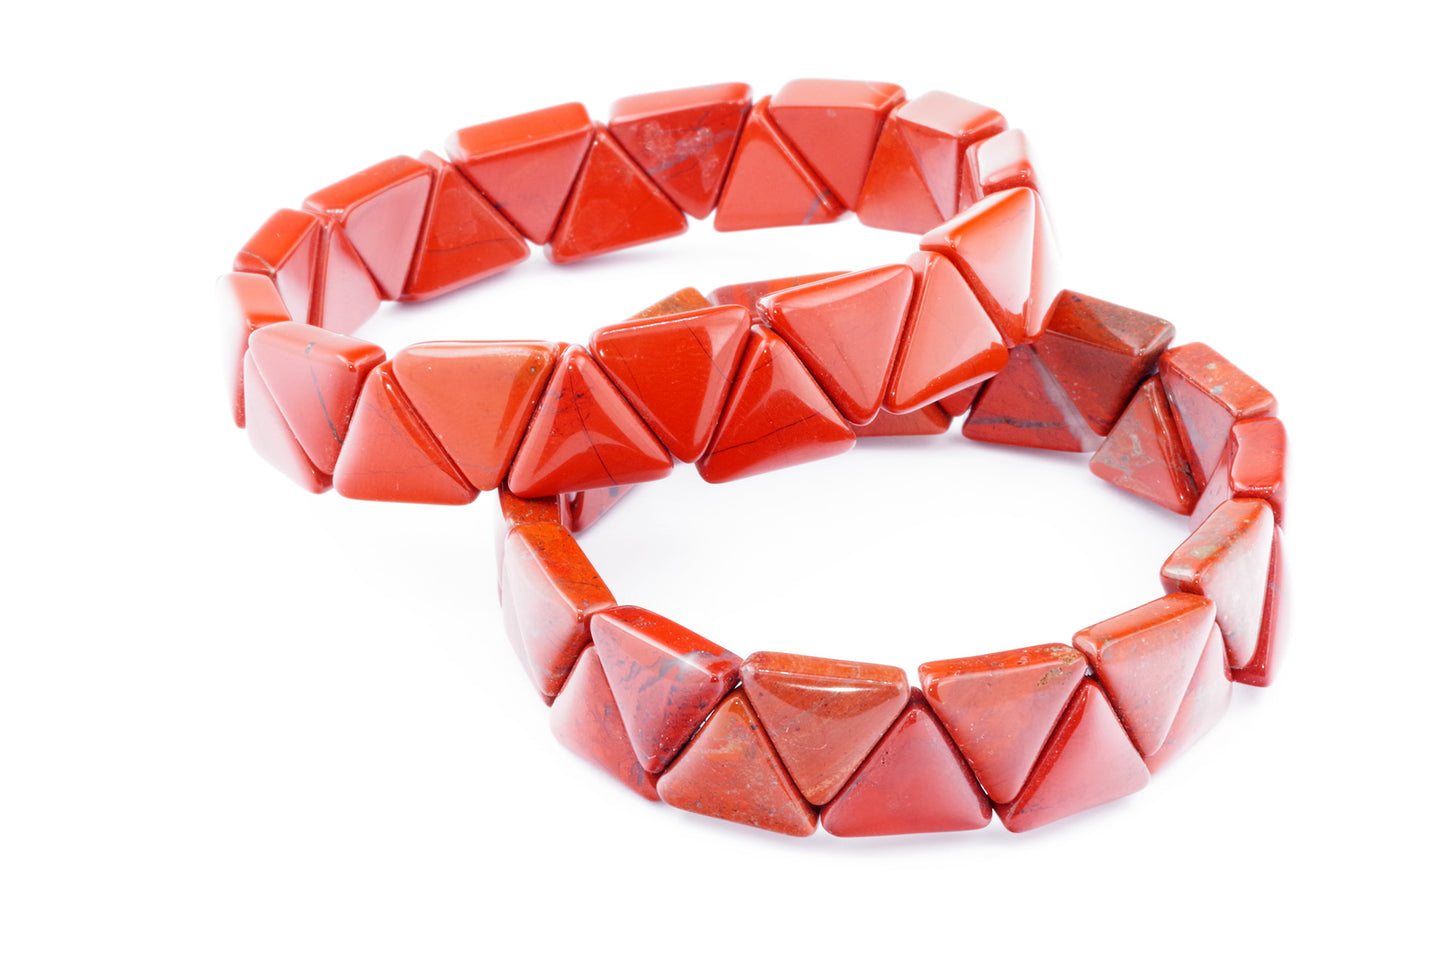 Raudonas jaspis apyrankė – Trikampėliai